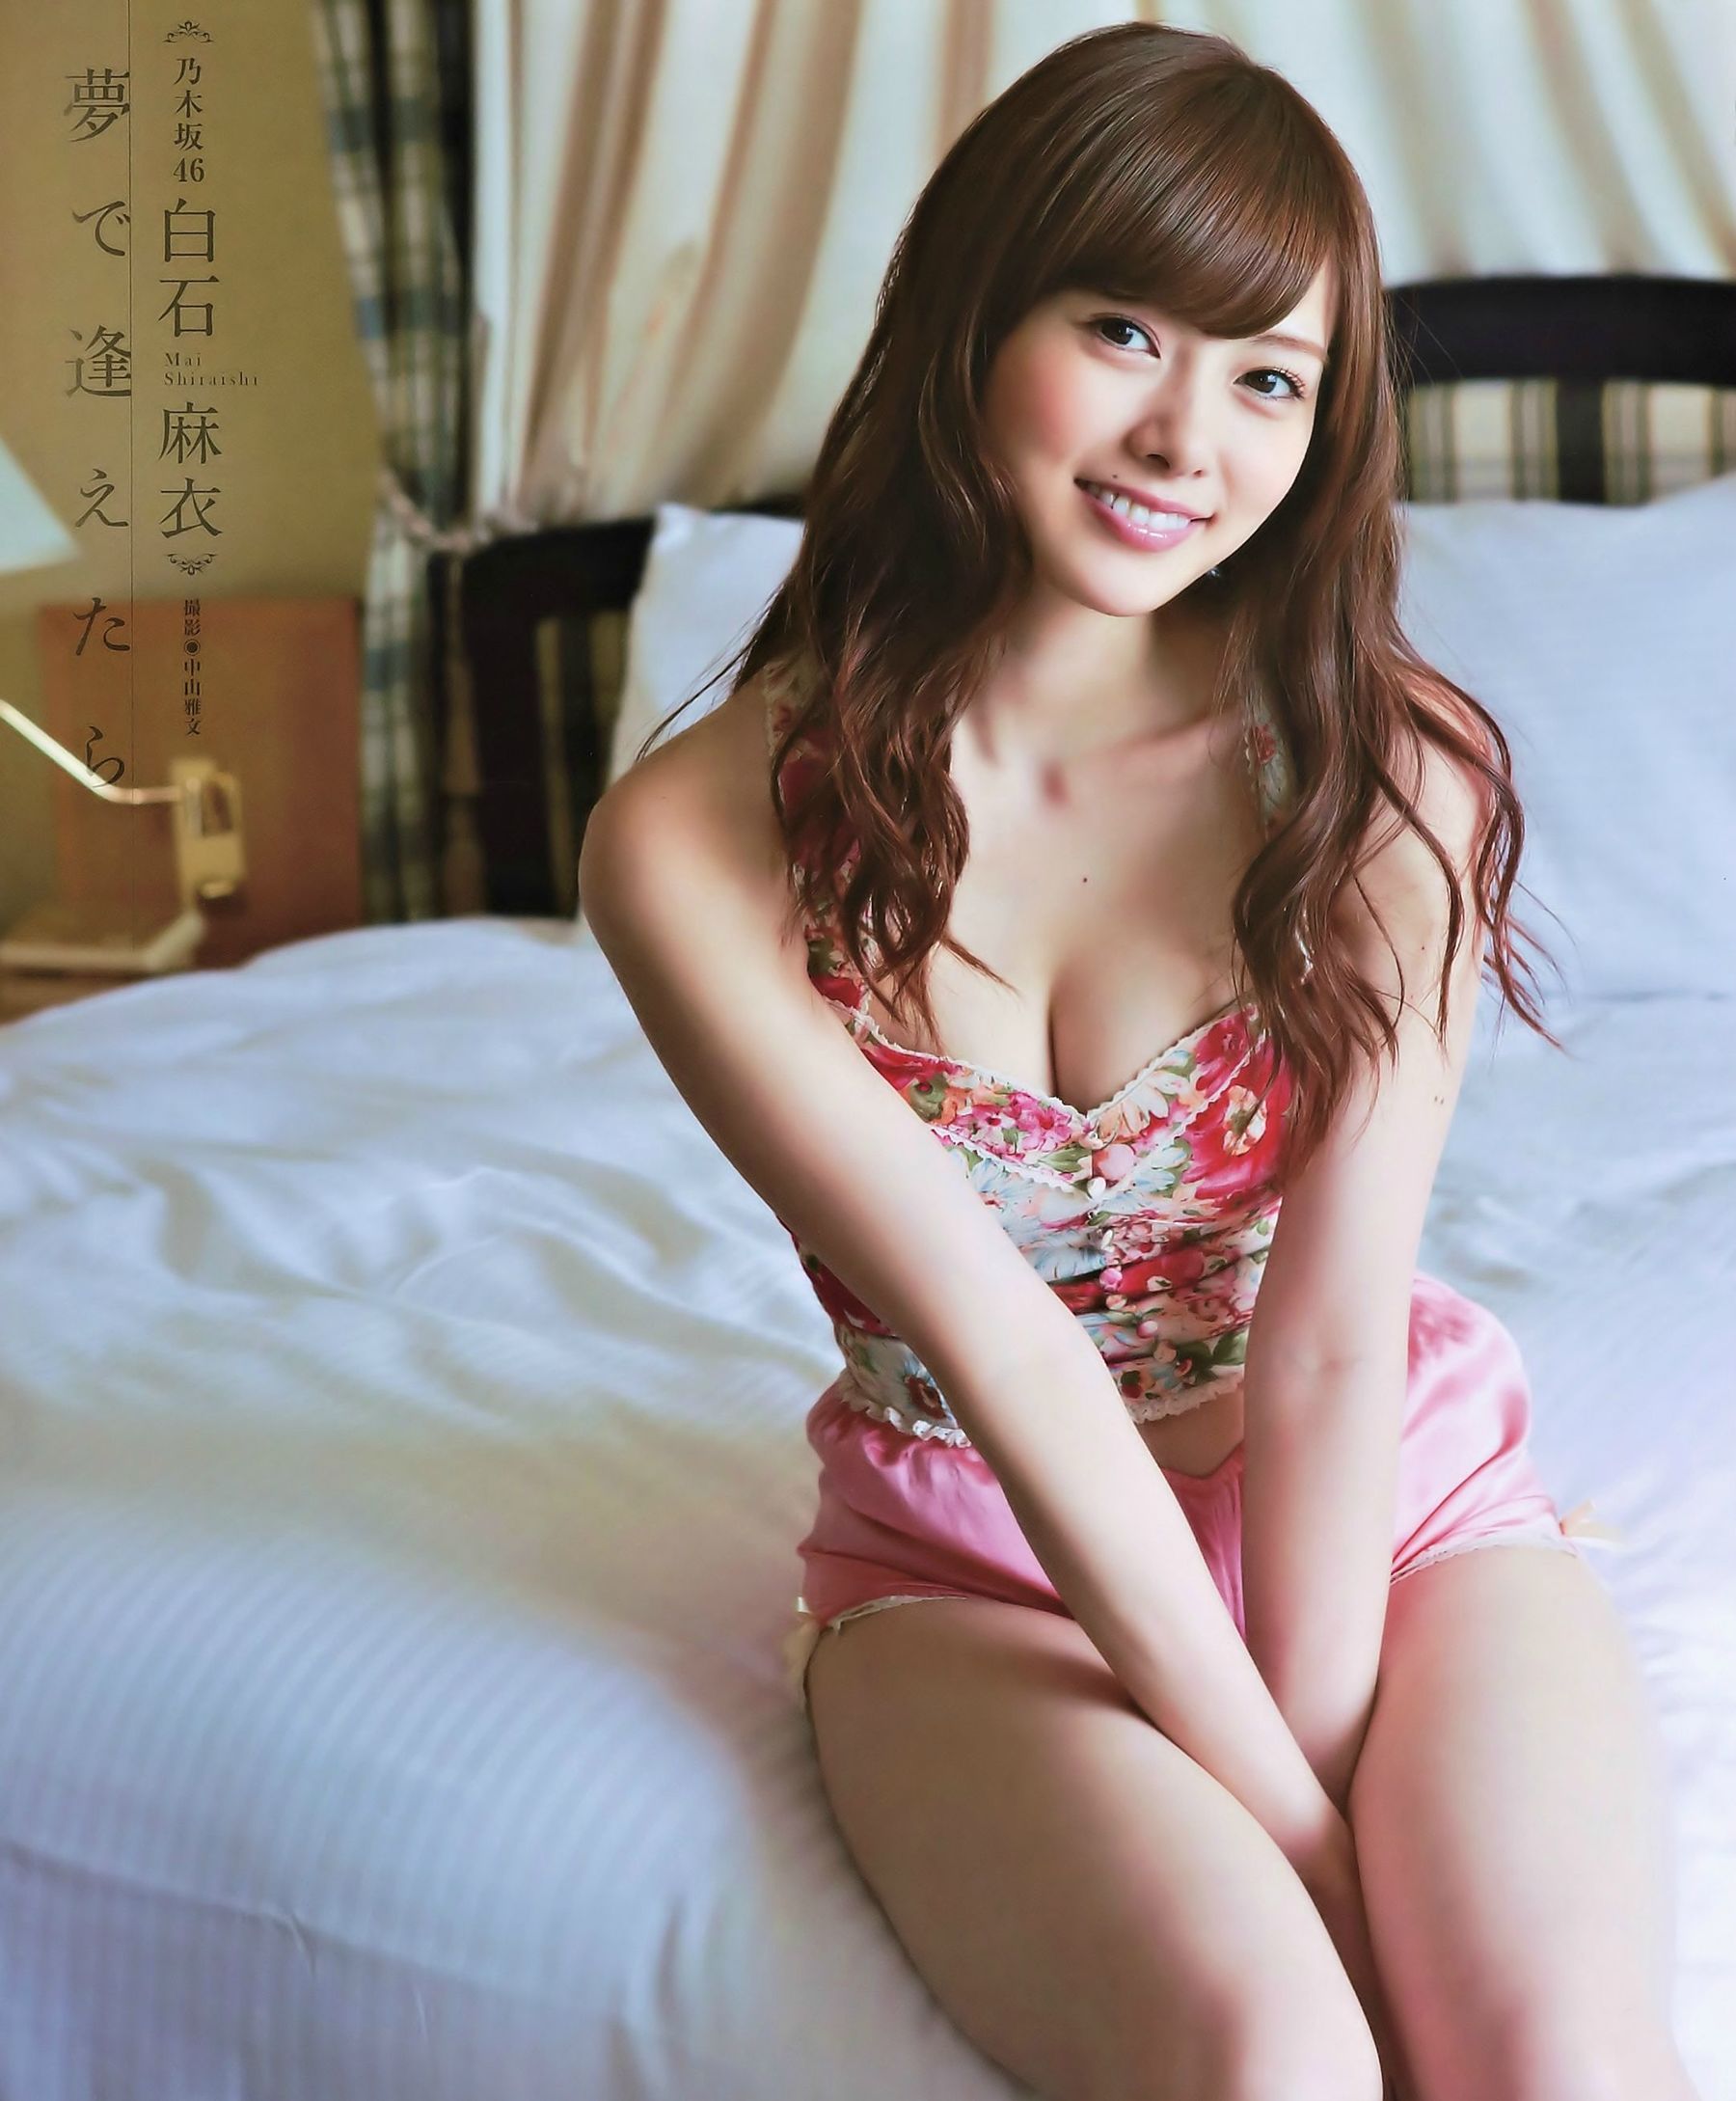 [网络美女]气质日本女星:白石麻衣高品质私家拍摄作品在线浏览(16P)